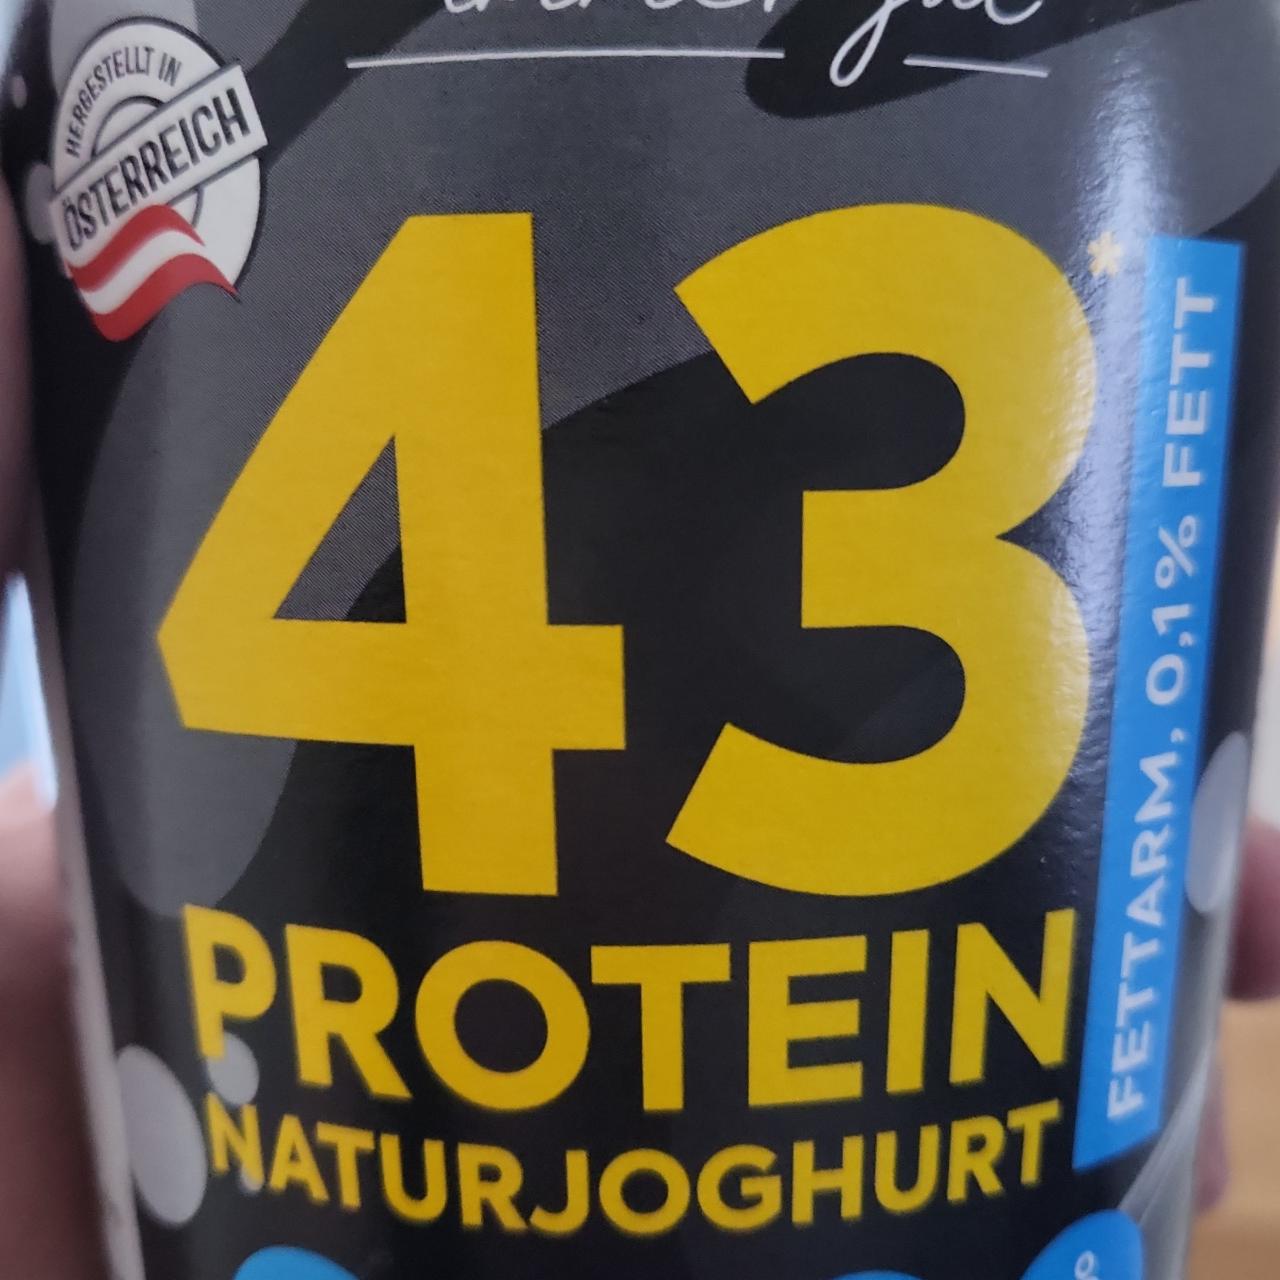 Фото - Protein Naturjoghurt Billa